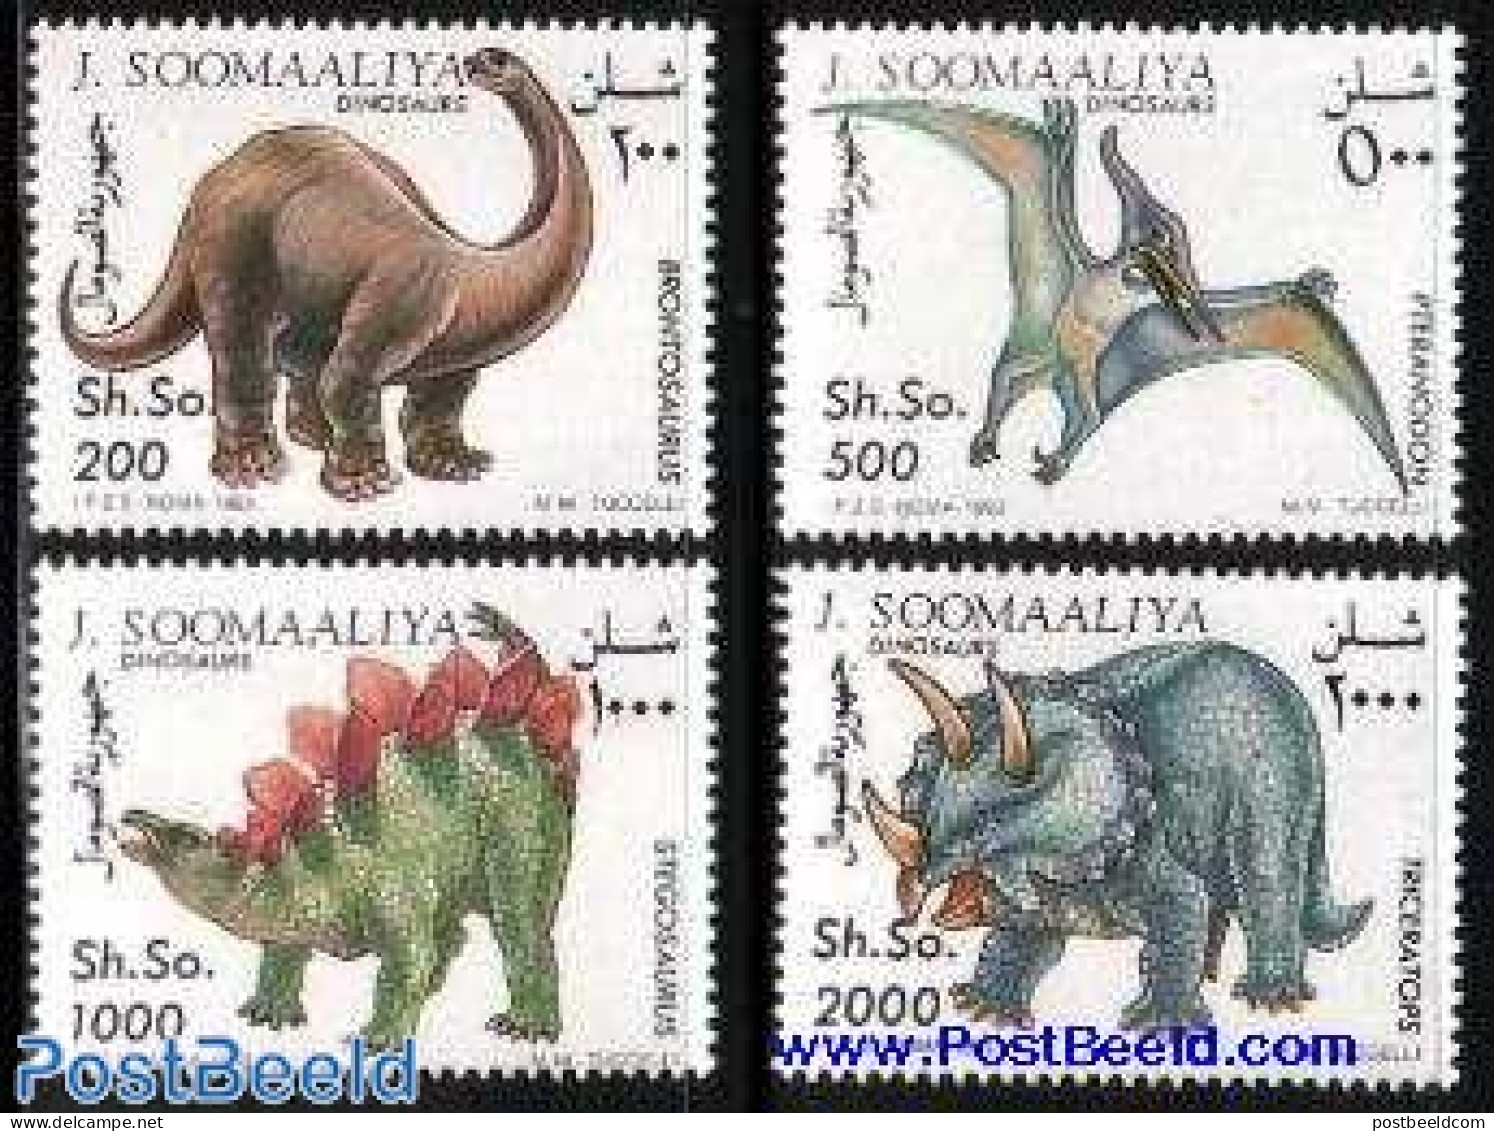 Somalia 1993 Prehistoric Animals 4v, Mint NH, Nature - Prehistoric Animals - Préhistoriques